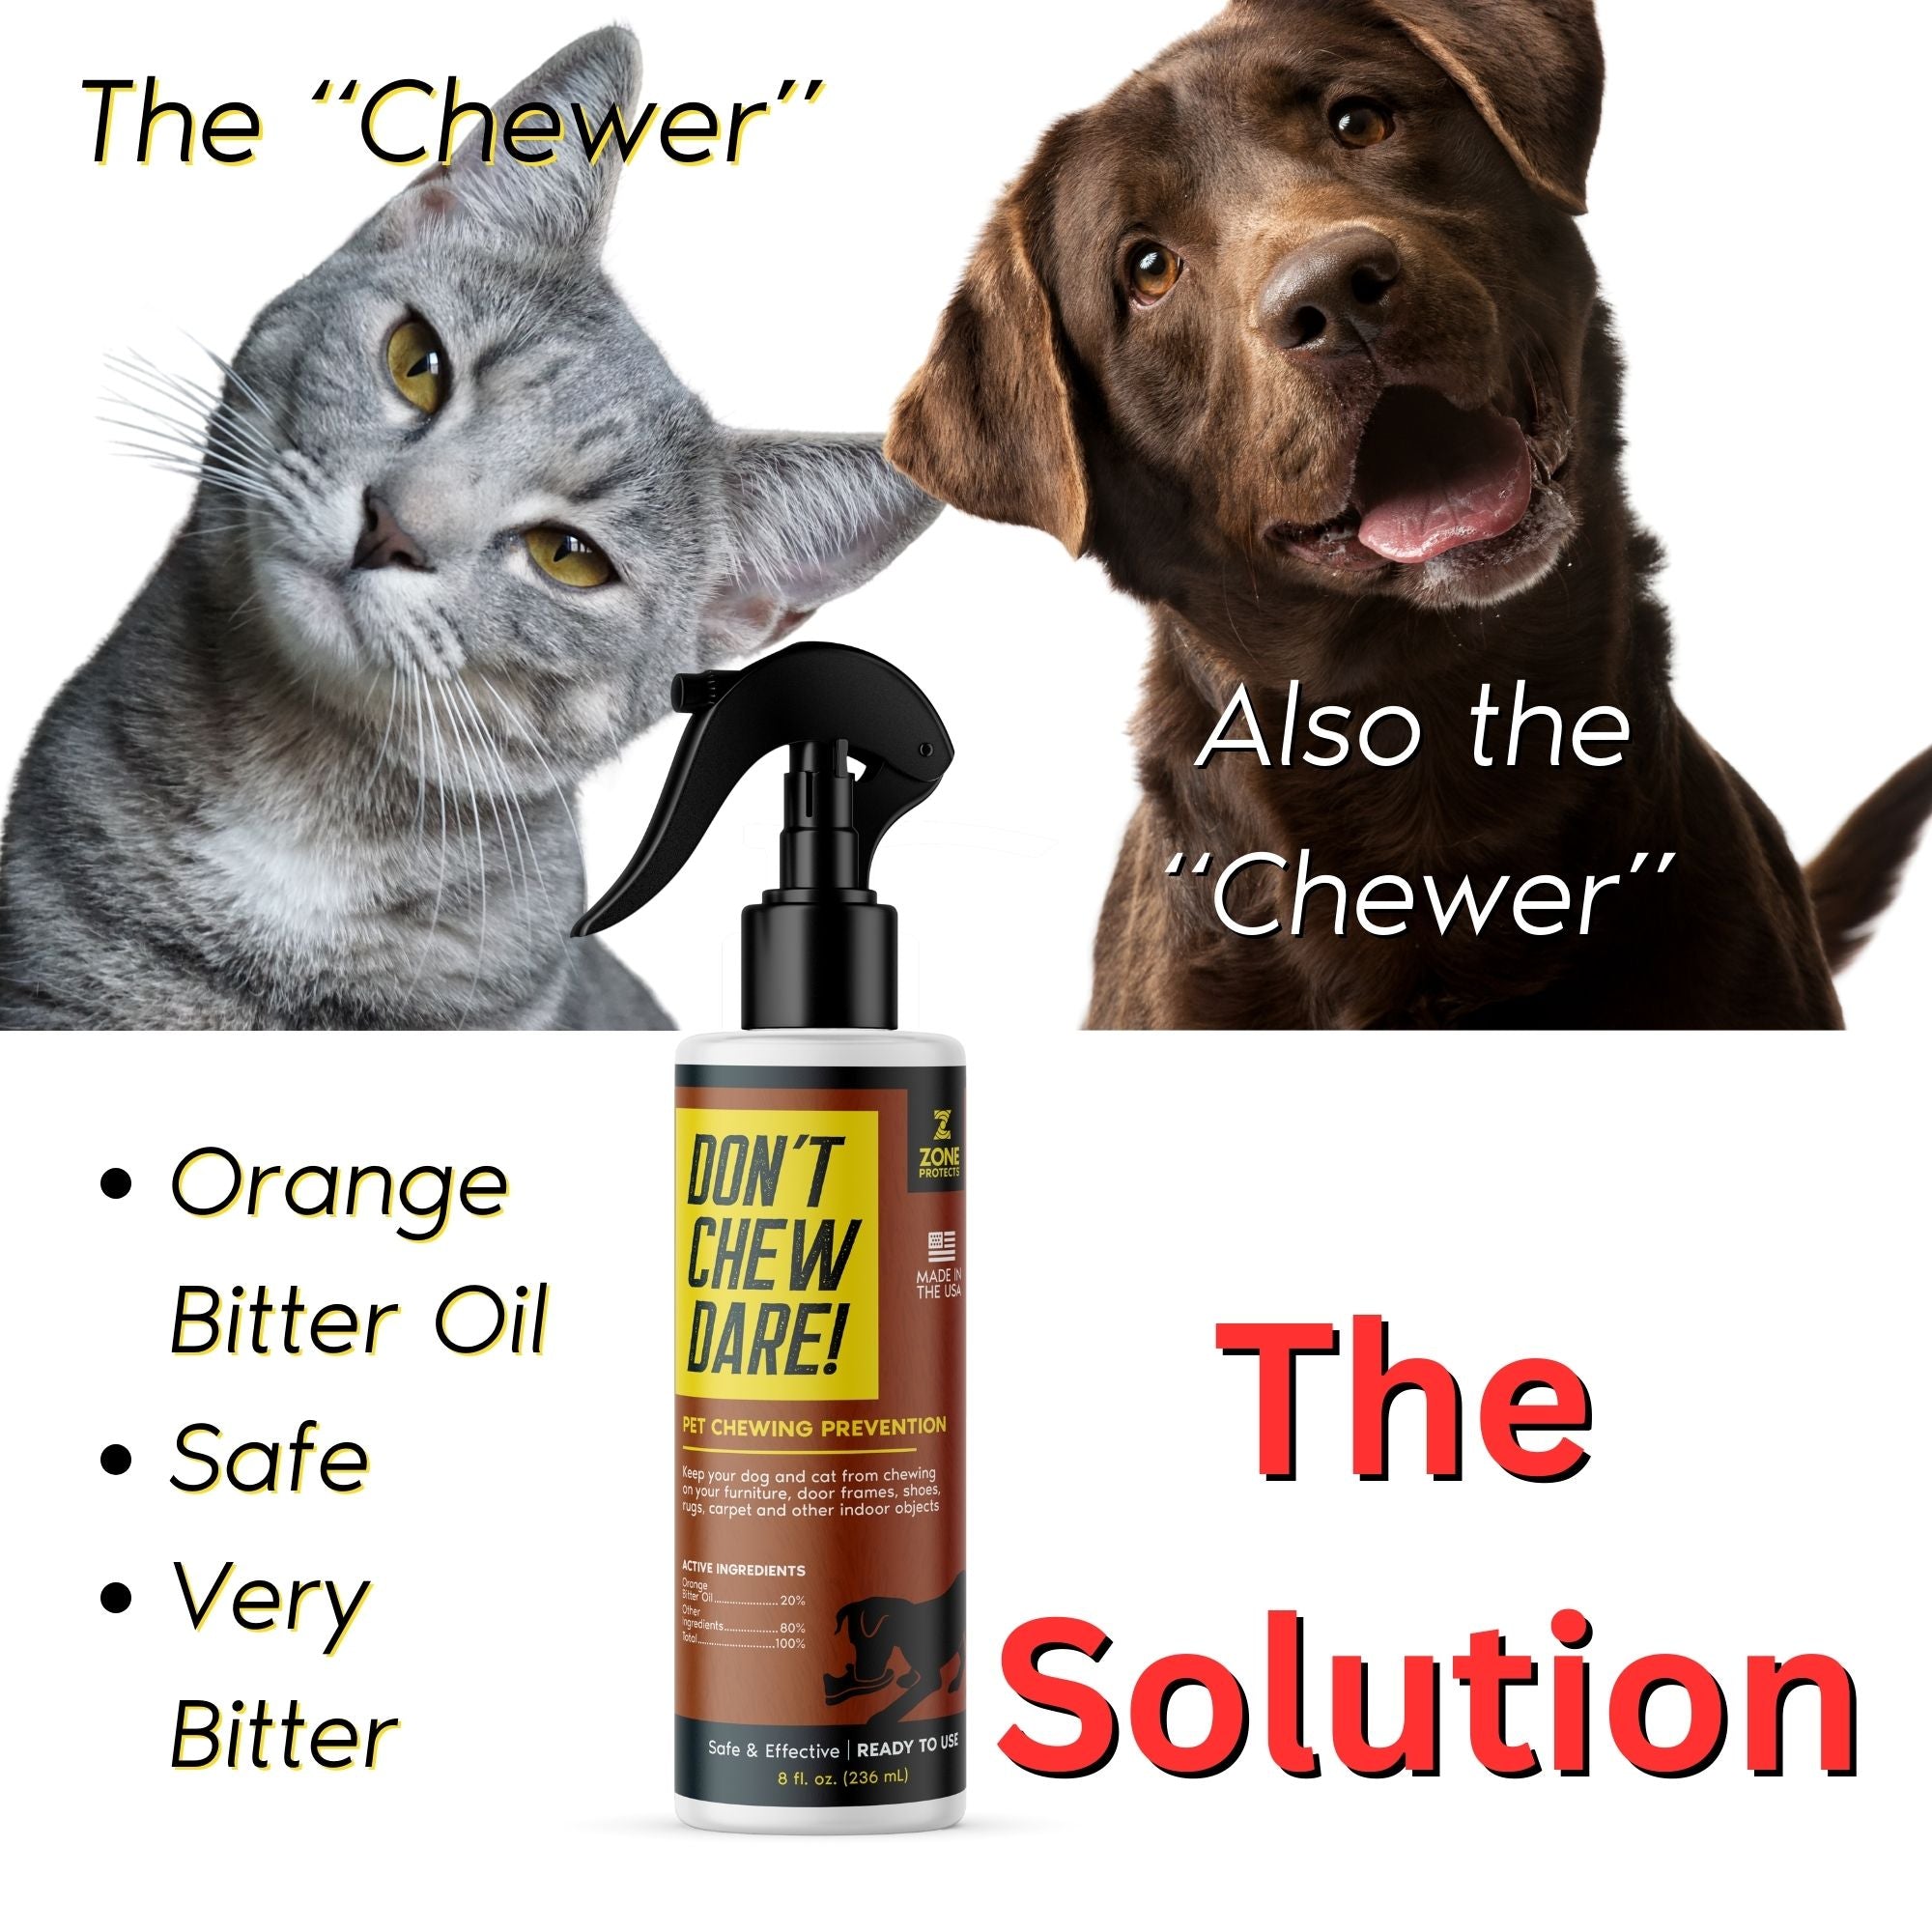 Chewing Prevention; Don't Chew Dare! 8oz Spray